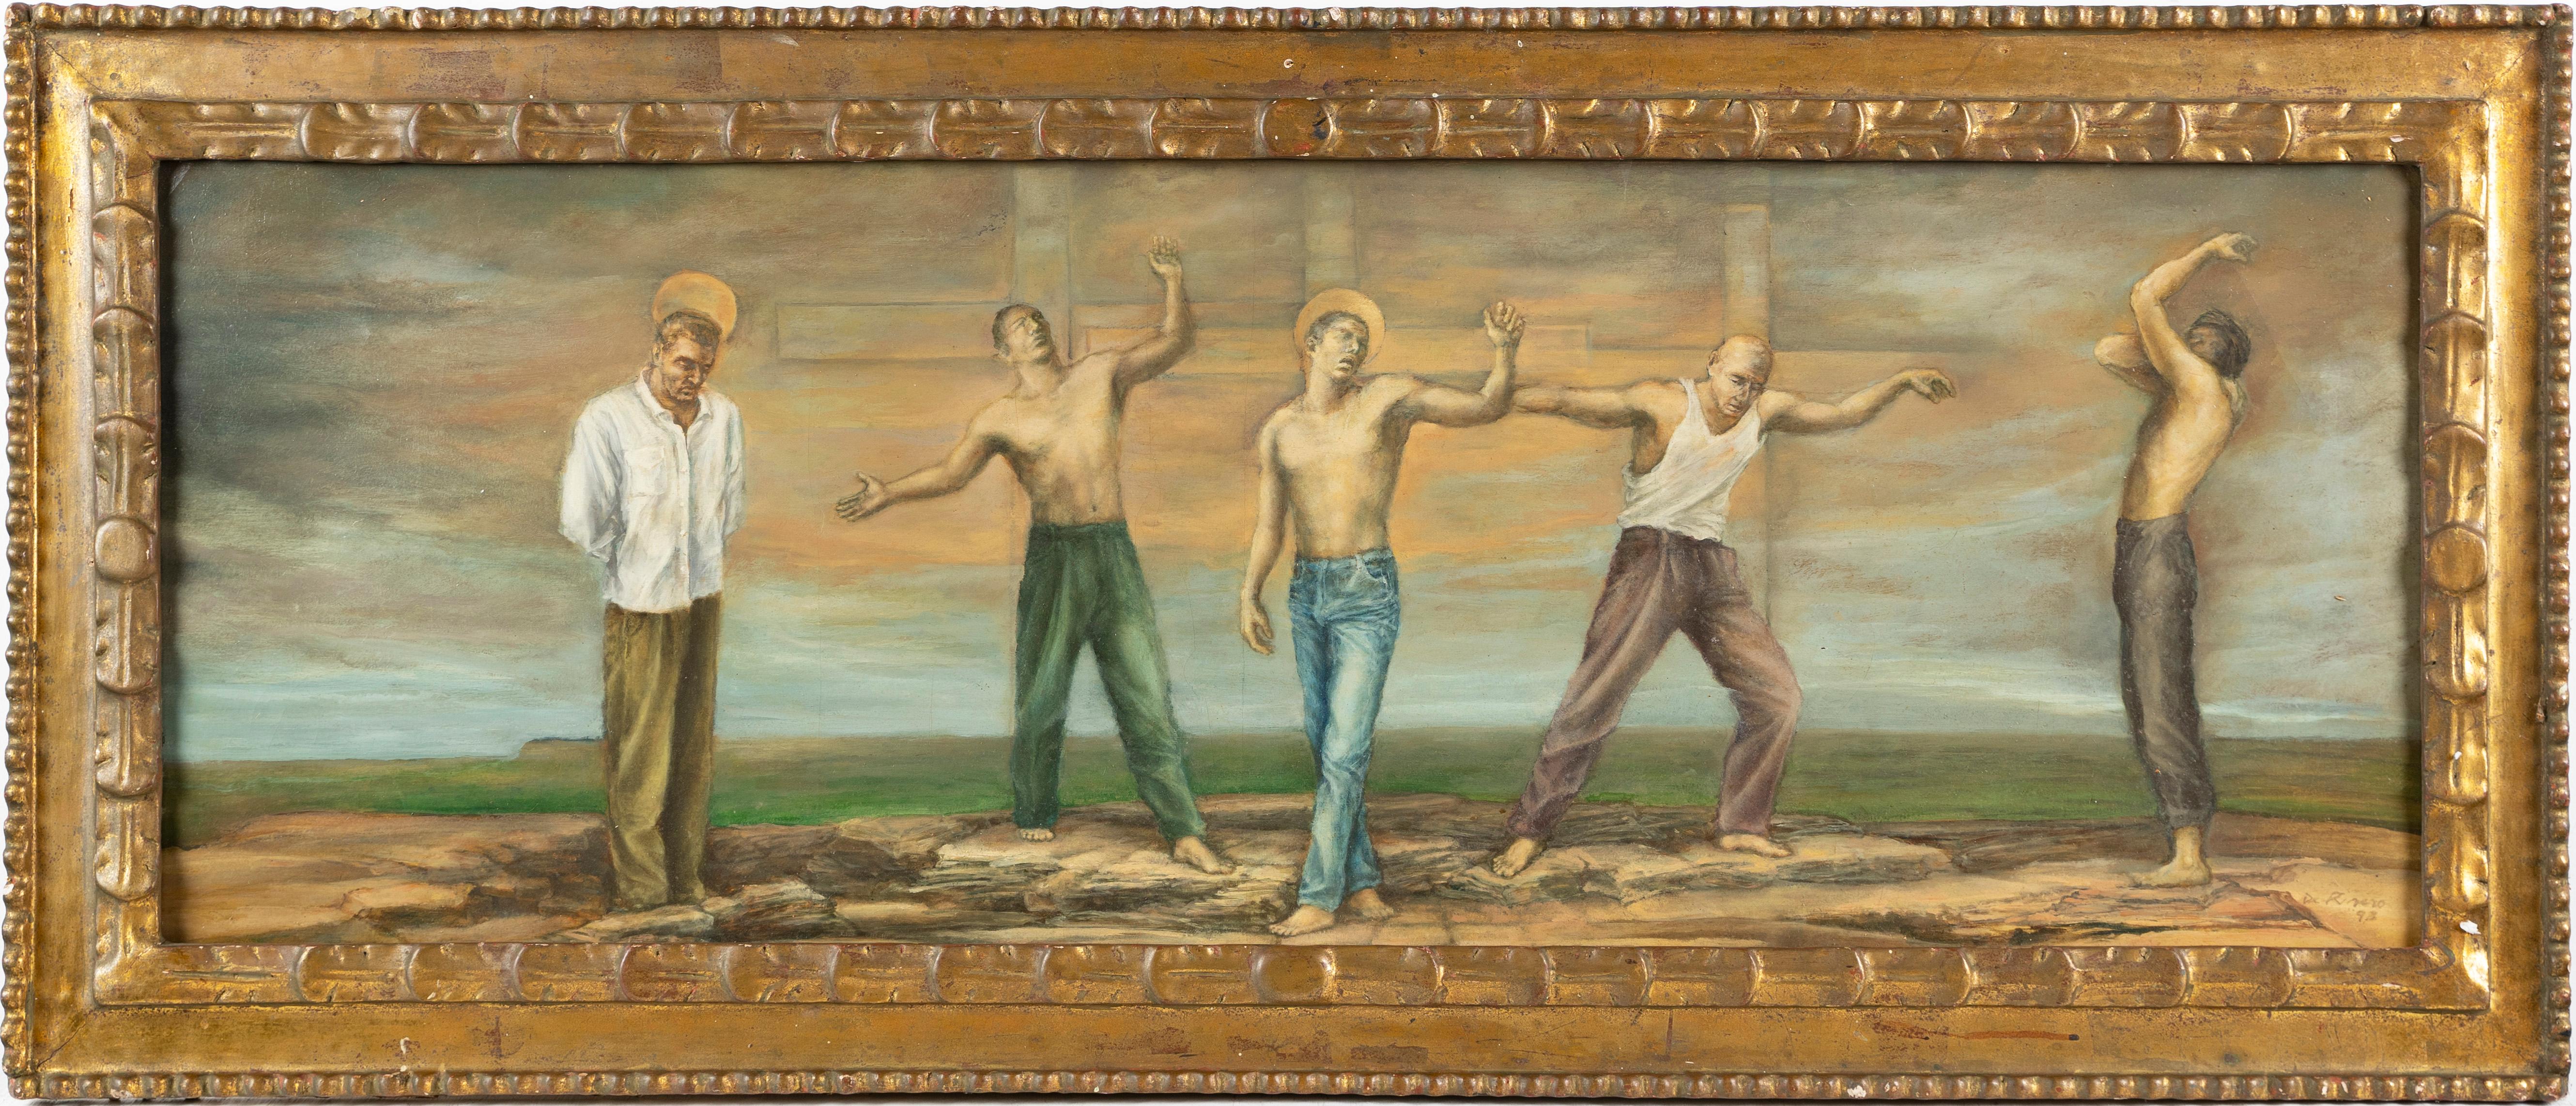 Großes signiertes surreales nacktes männliches Porträt, symbolistische Landschaft, gerahmtes Ölgemälde